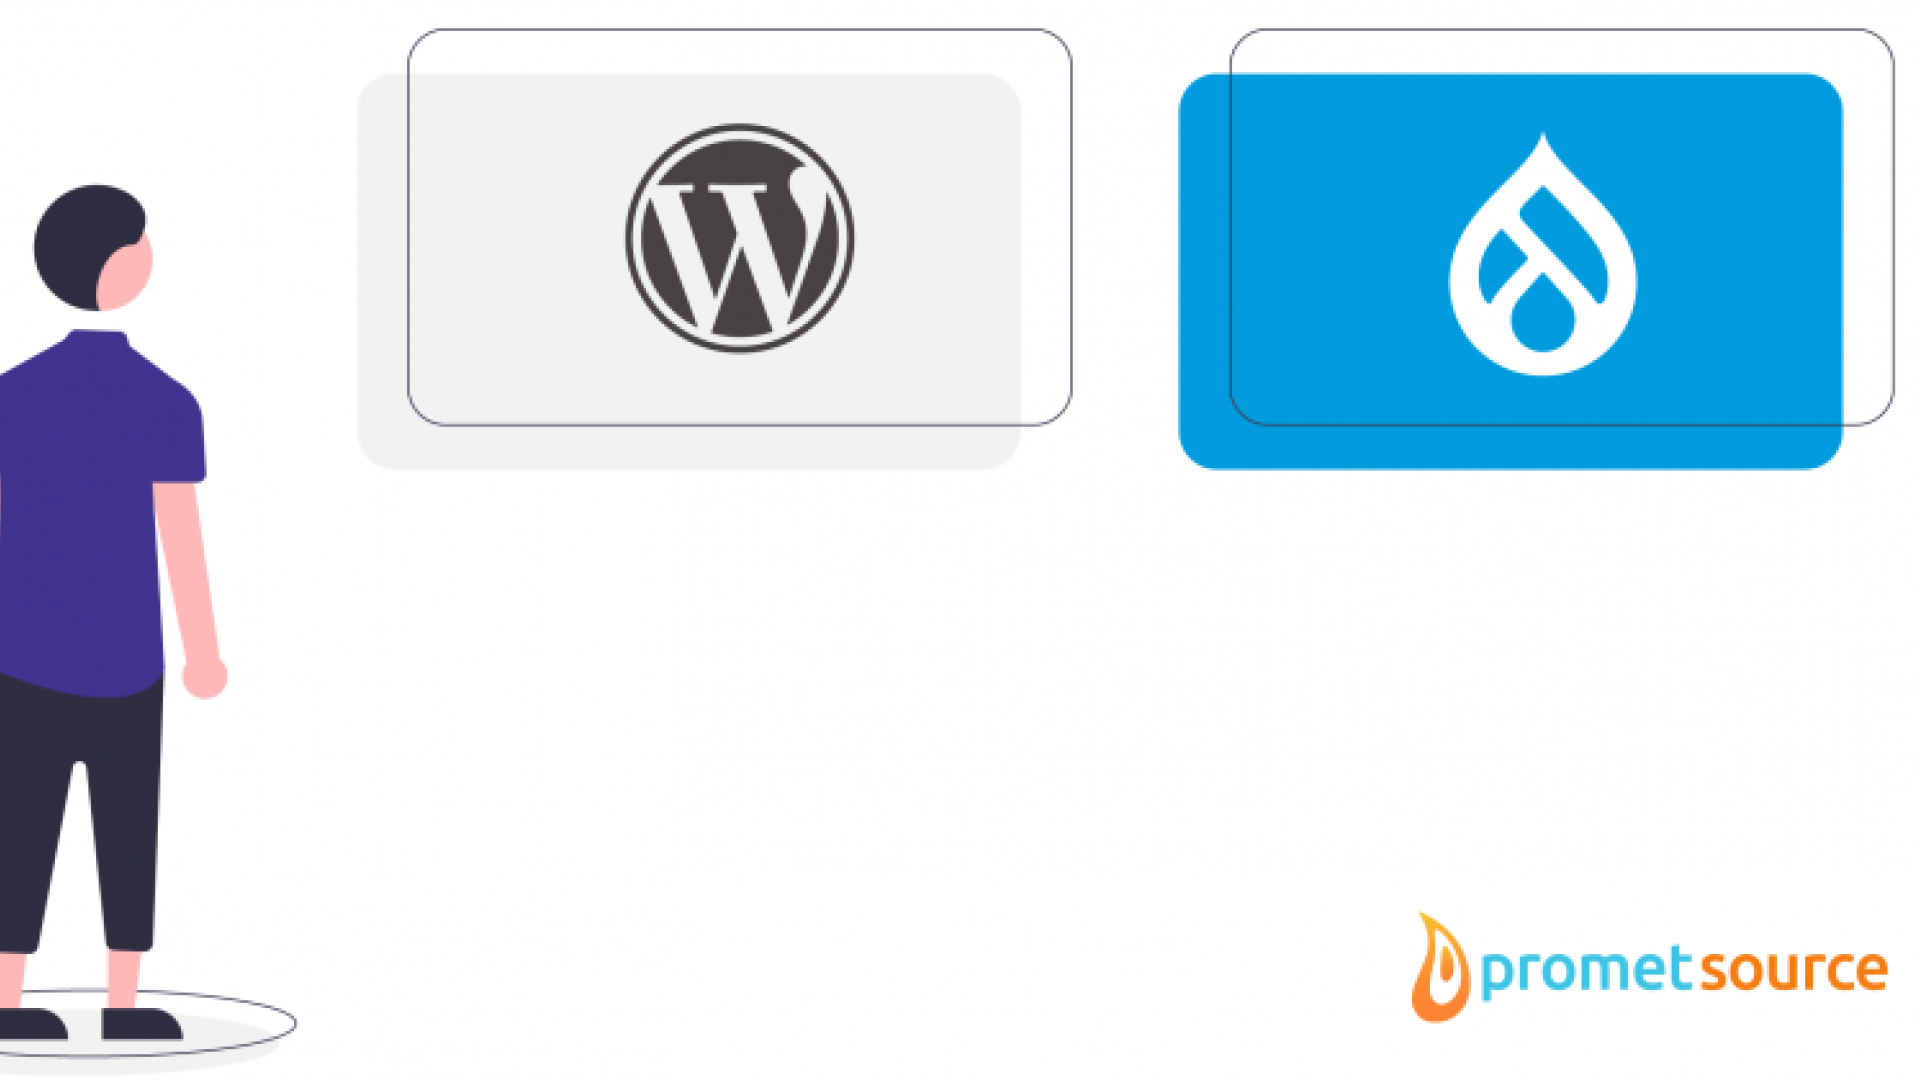 A person looking at WordPress and Drupal logos